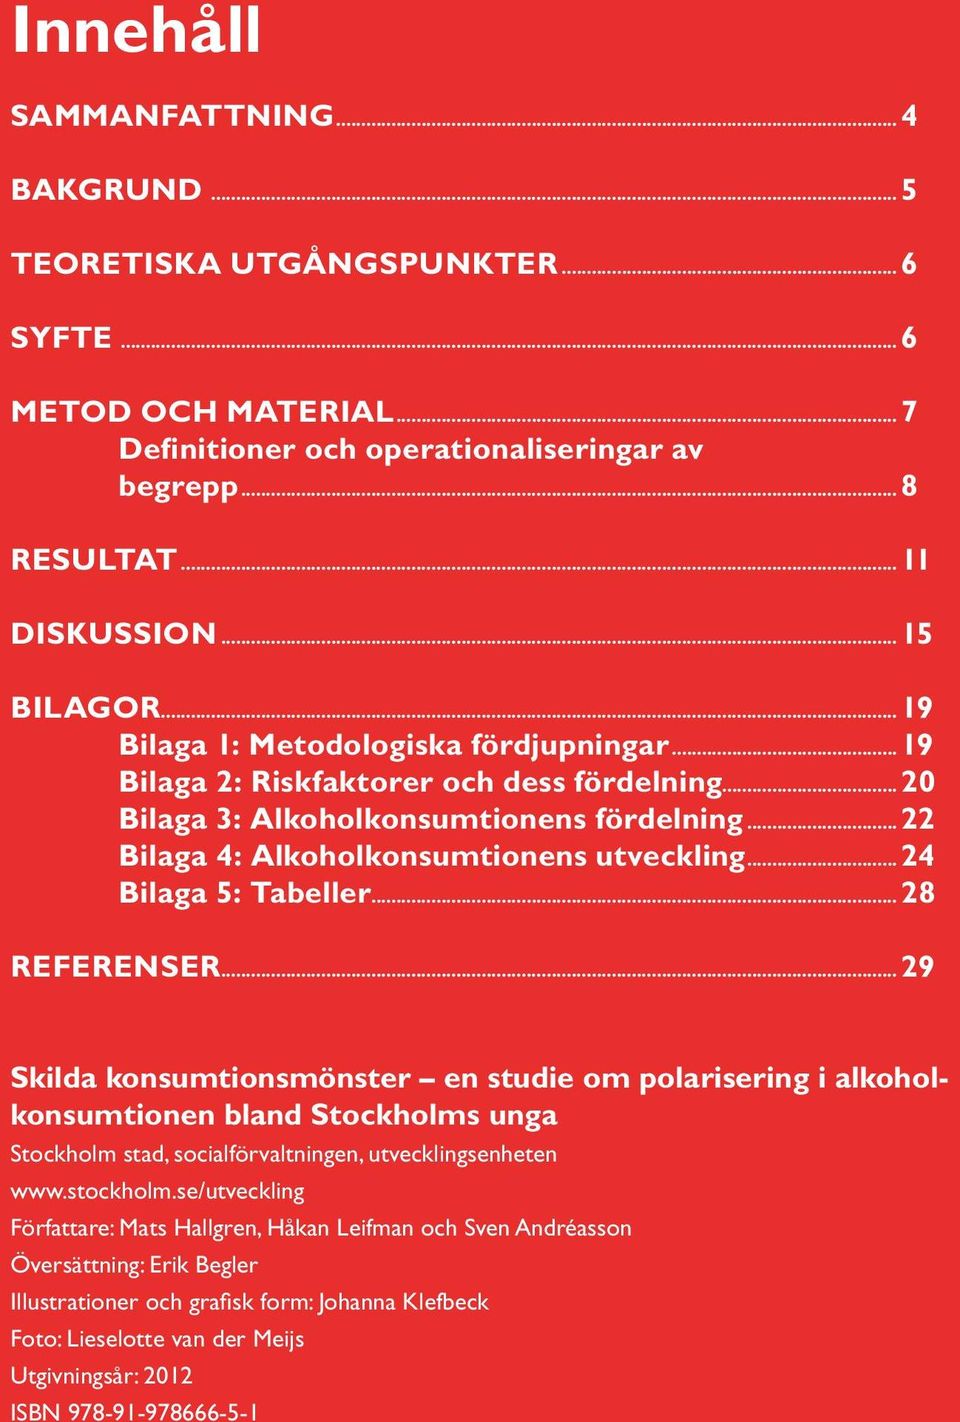 ..24 Bilaga 5: Tabeller...28 REFERENSER...29 Skilda konsumtionsmönster en studie om polarisering i alkoholkonsumtionen bland Stockholms unga Stockholm stad, socialförvaltningen, utvecklingsenheten www.